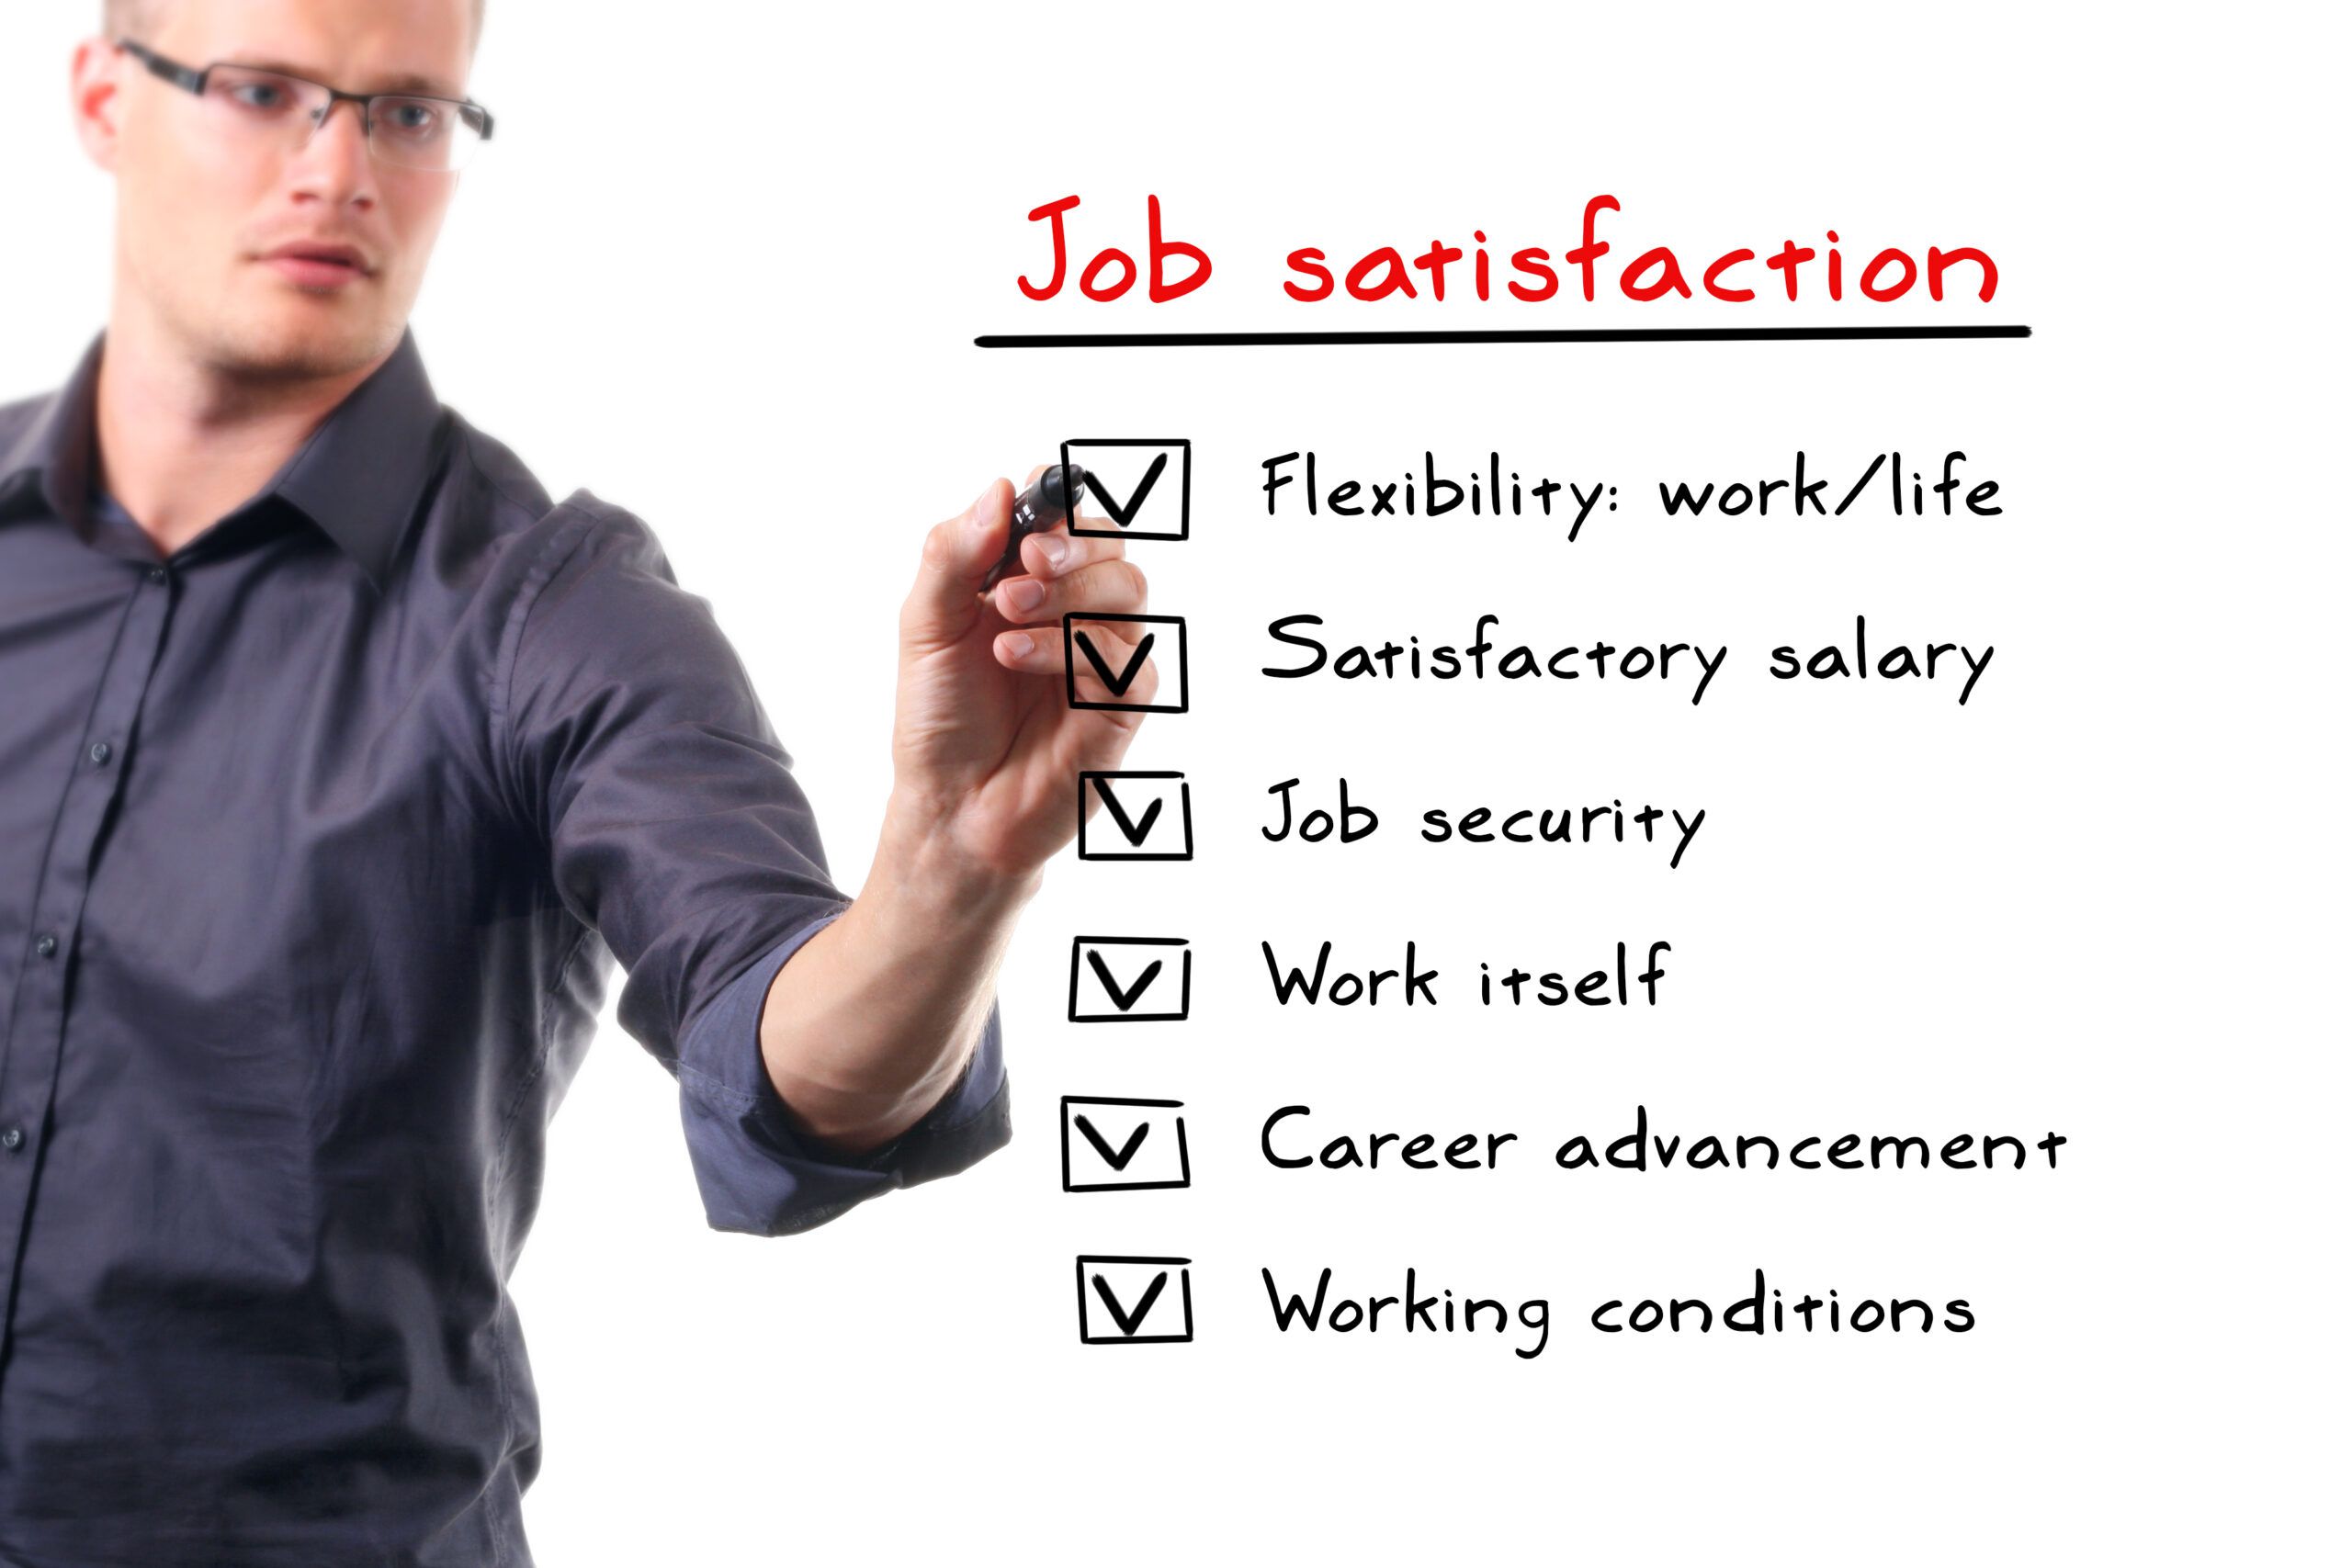 عوامل موثر در رضایت شغلی